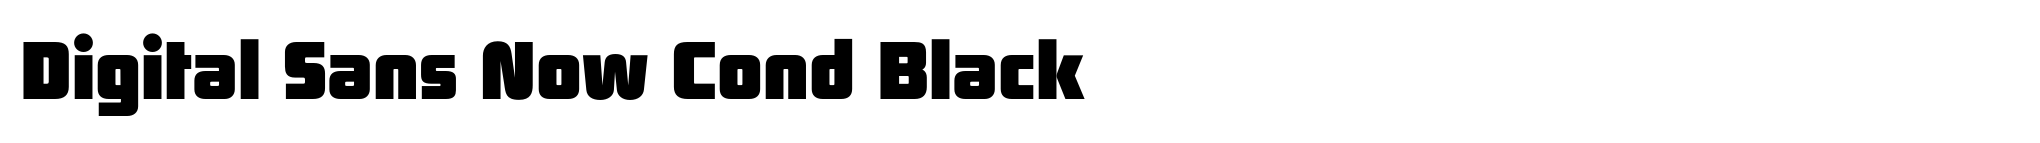 Digital Sans Now Cond Black image